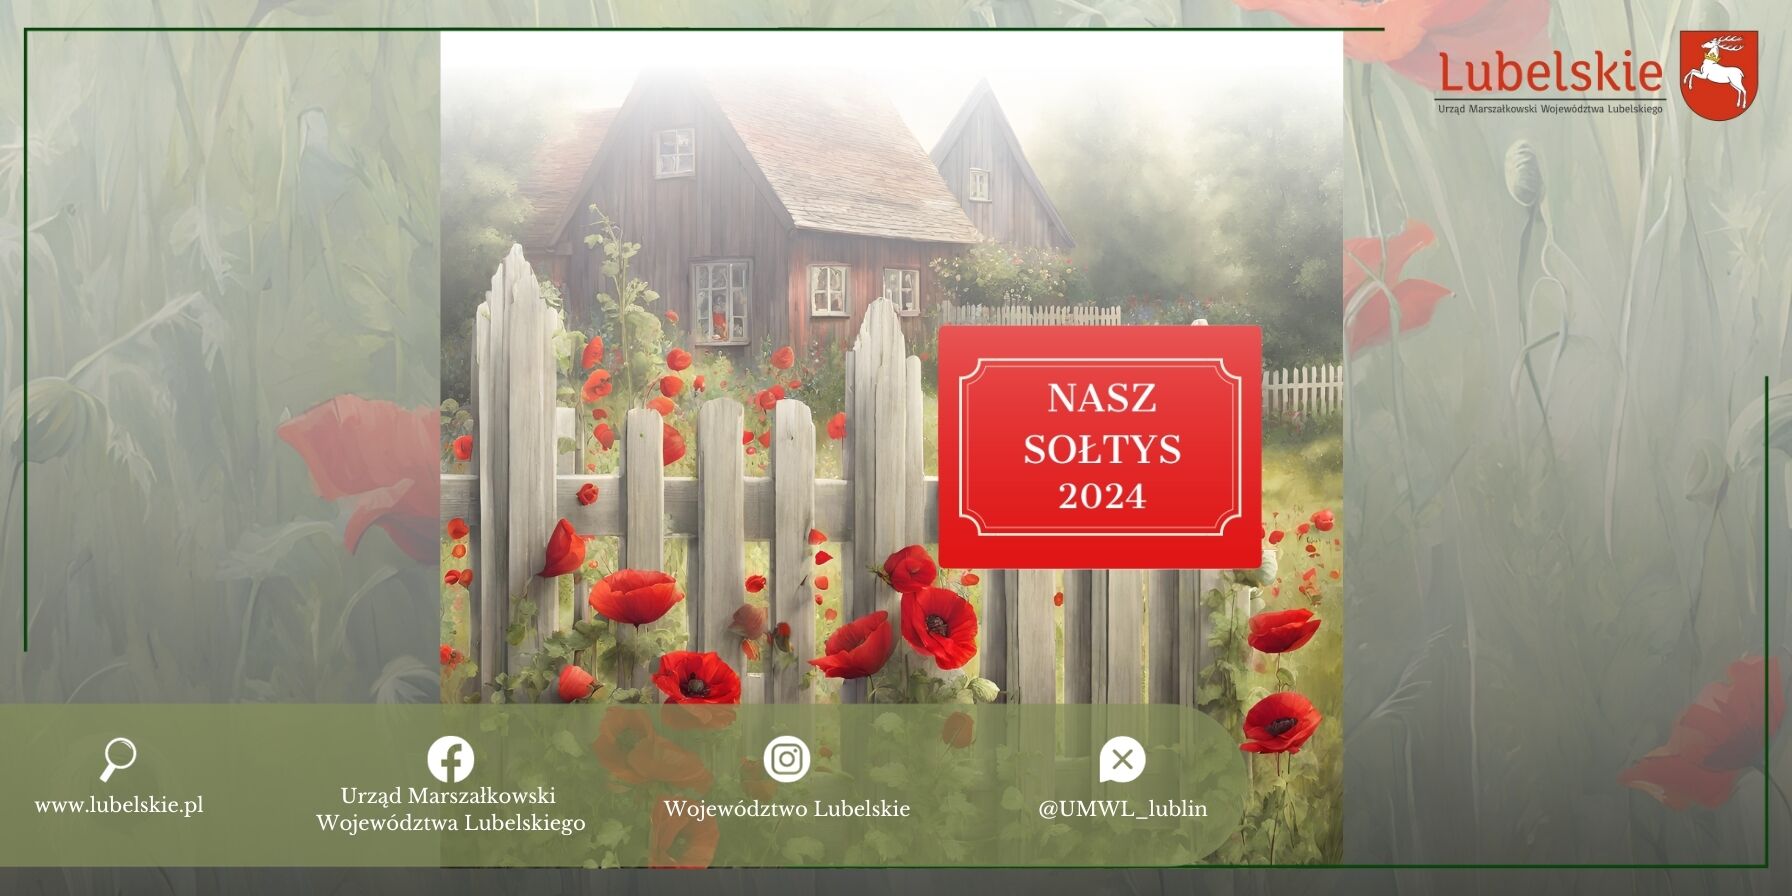 Obraz przedstawia sielski krajobraz z drewnianym domem za płotem, otoczony zielonymi polami i czerwonymi maki. Na zdjęciu umieszczono napis "NASZ SOŁTYS 2024".